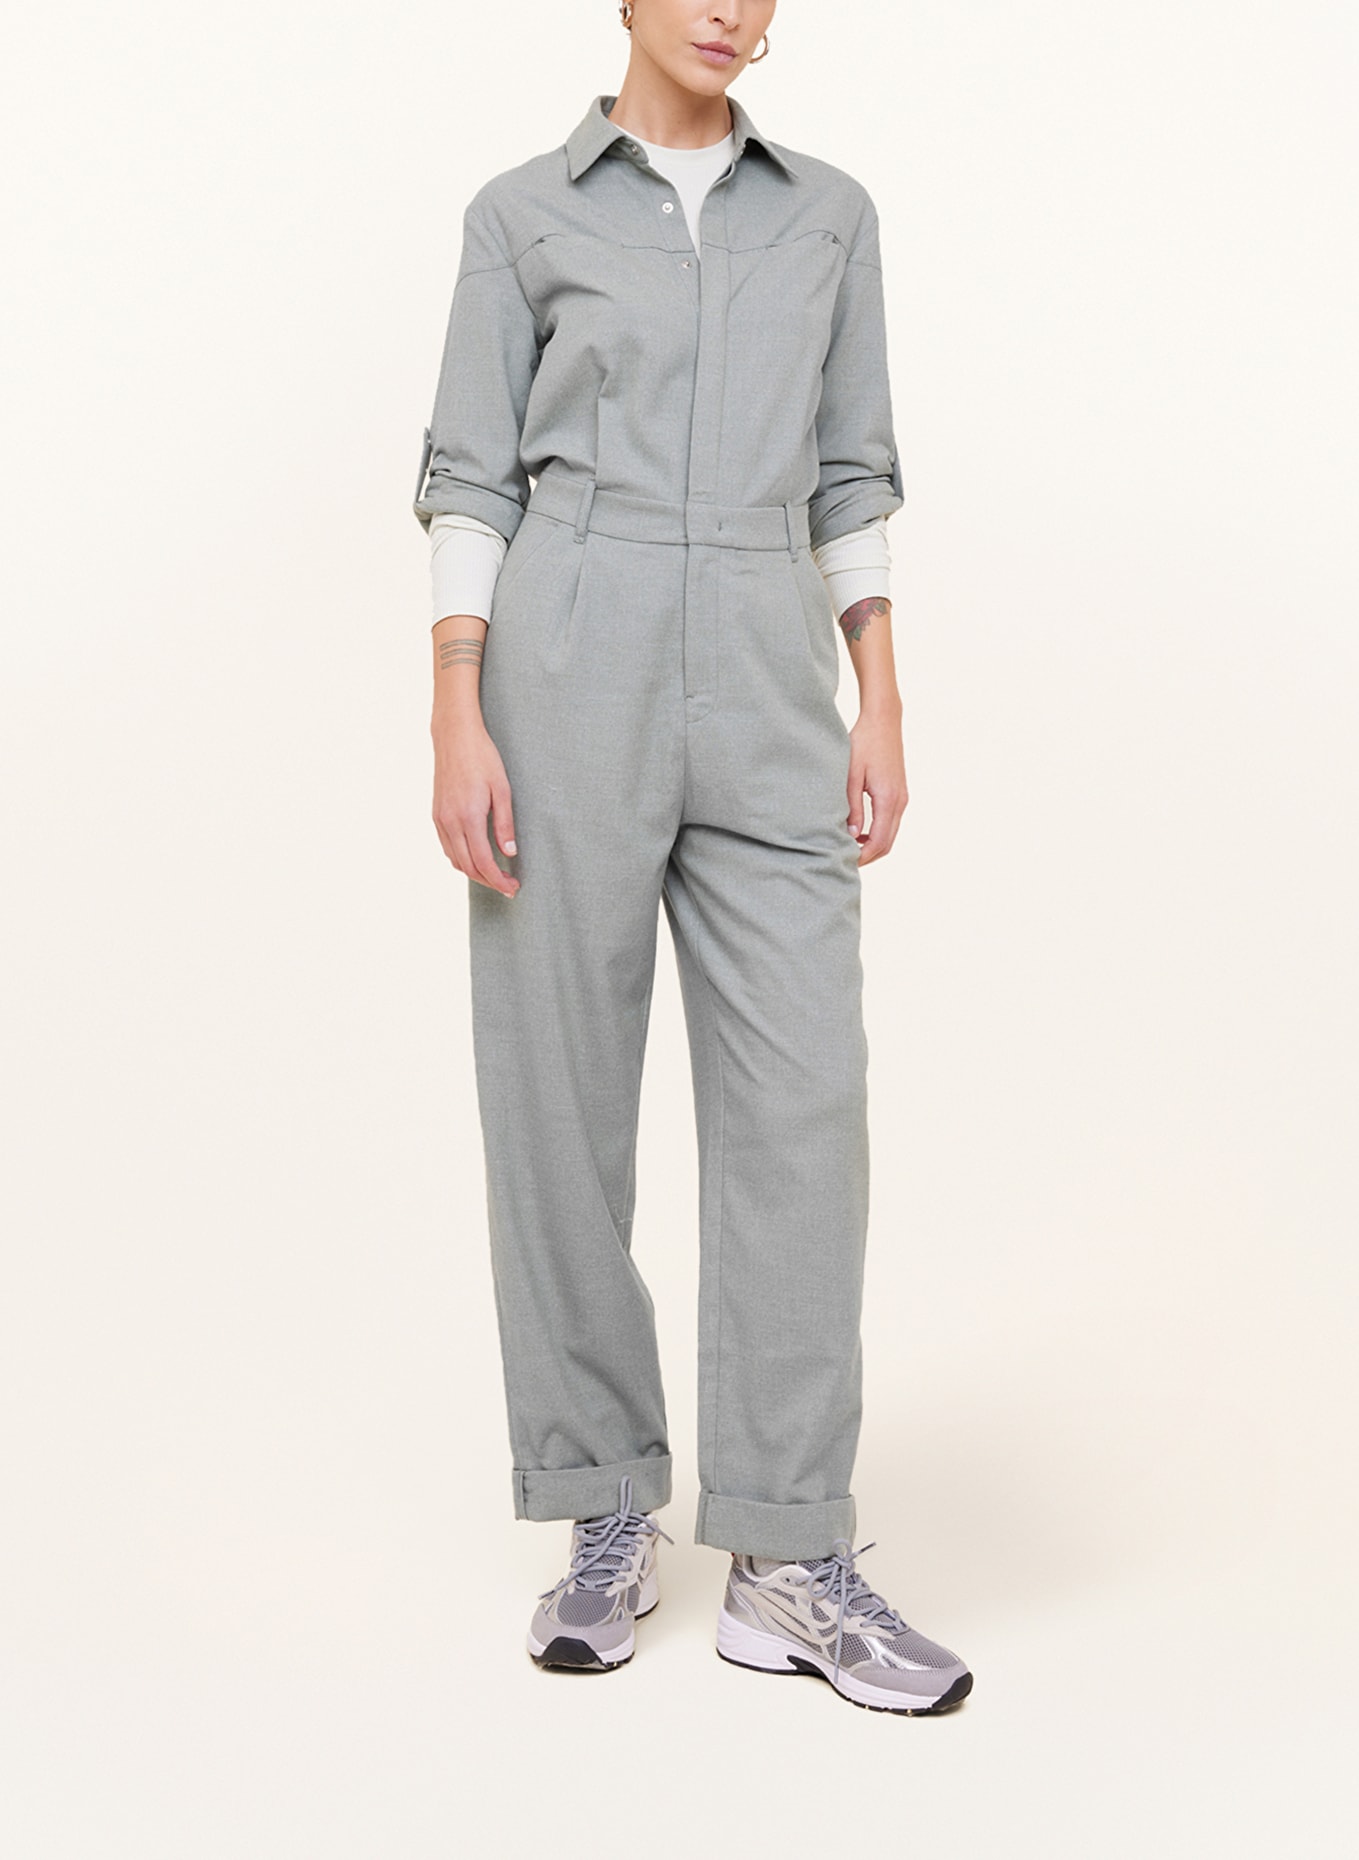 VANILIA Flannel jumpsuit, Color: GRAY (Image 2)